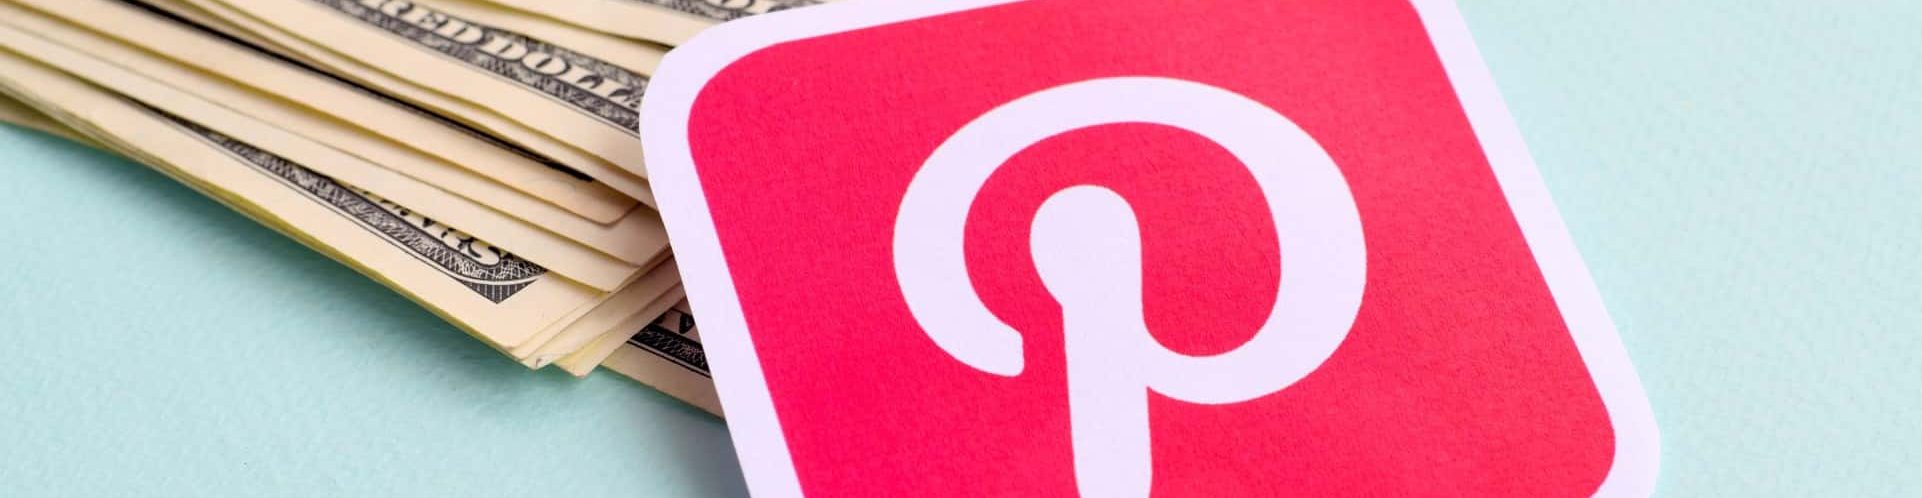 5 motivos para todo corretor de imóveis utilizar o Pinterest no seu negócio